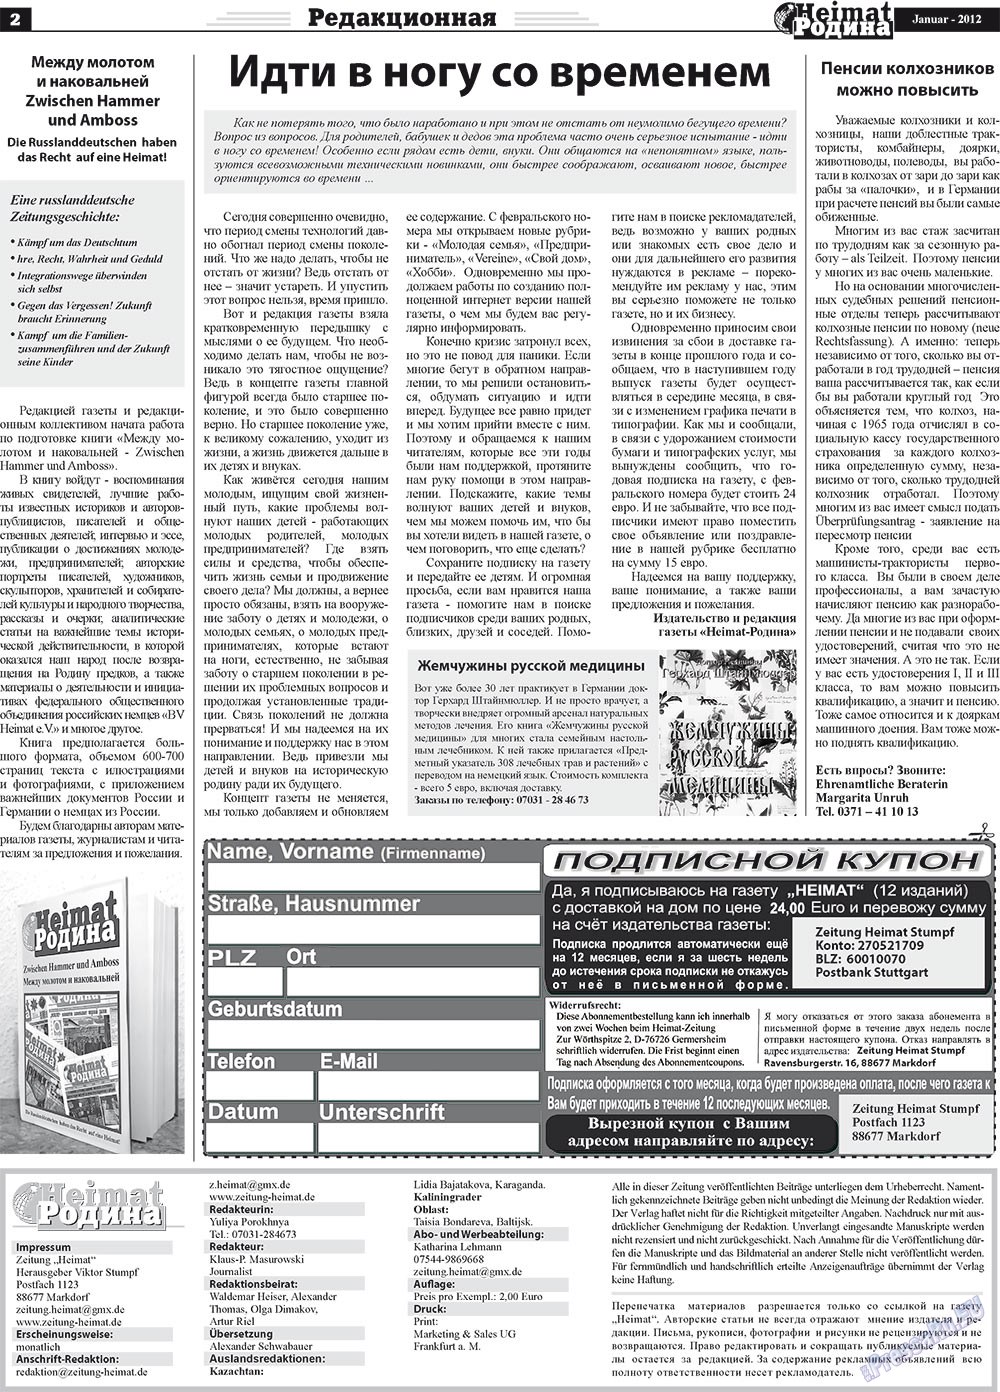 Heimat-Родина (газета). 2012 год, номер 1, стр. 2